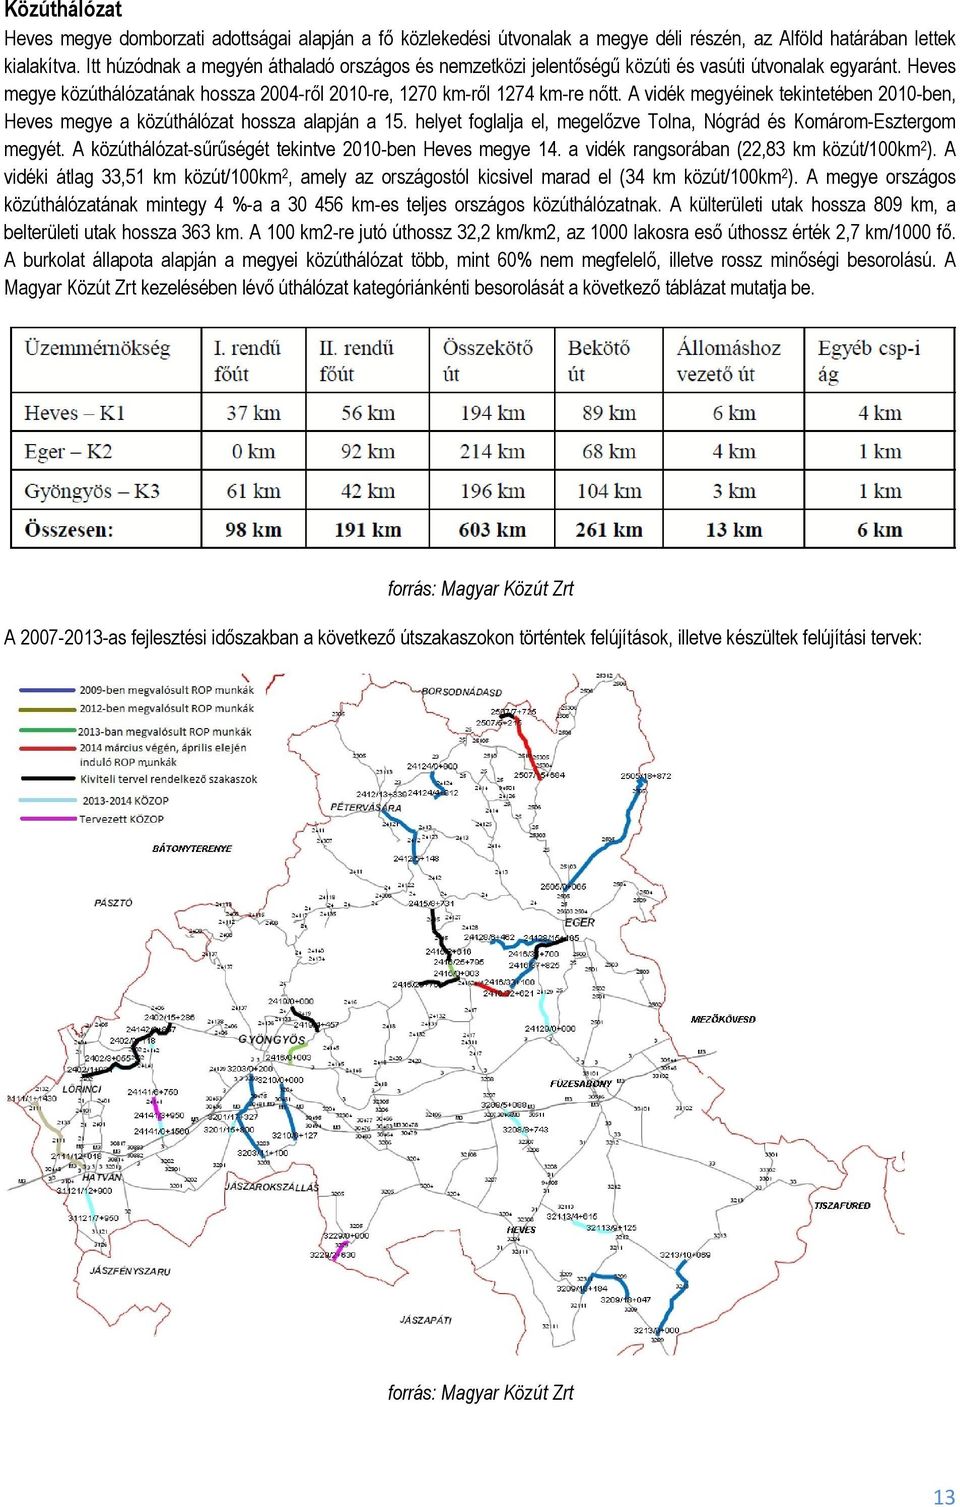 A vidék megyéinek tekintetében 2010-ben, Heves megye a közúthálózat hossza alapján a 15. helyet foglalja el, megelőzve Tolna, Nógrád és Komárom-Esztergom megyét.